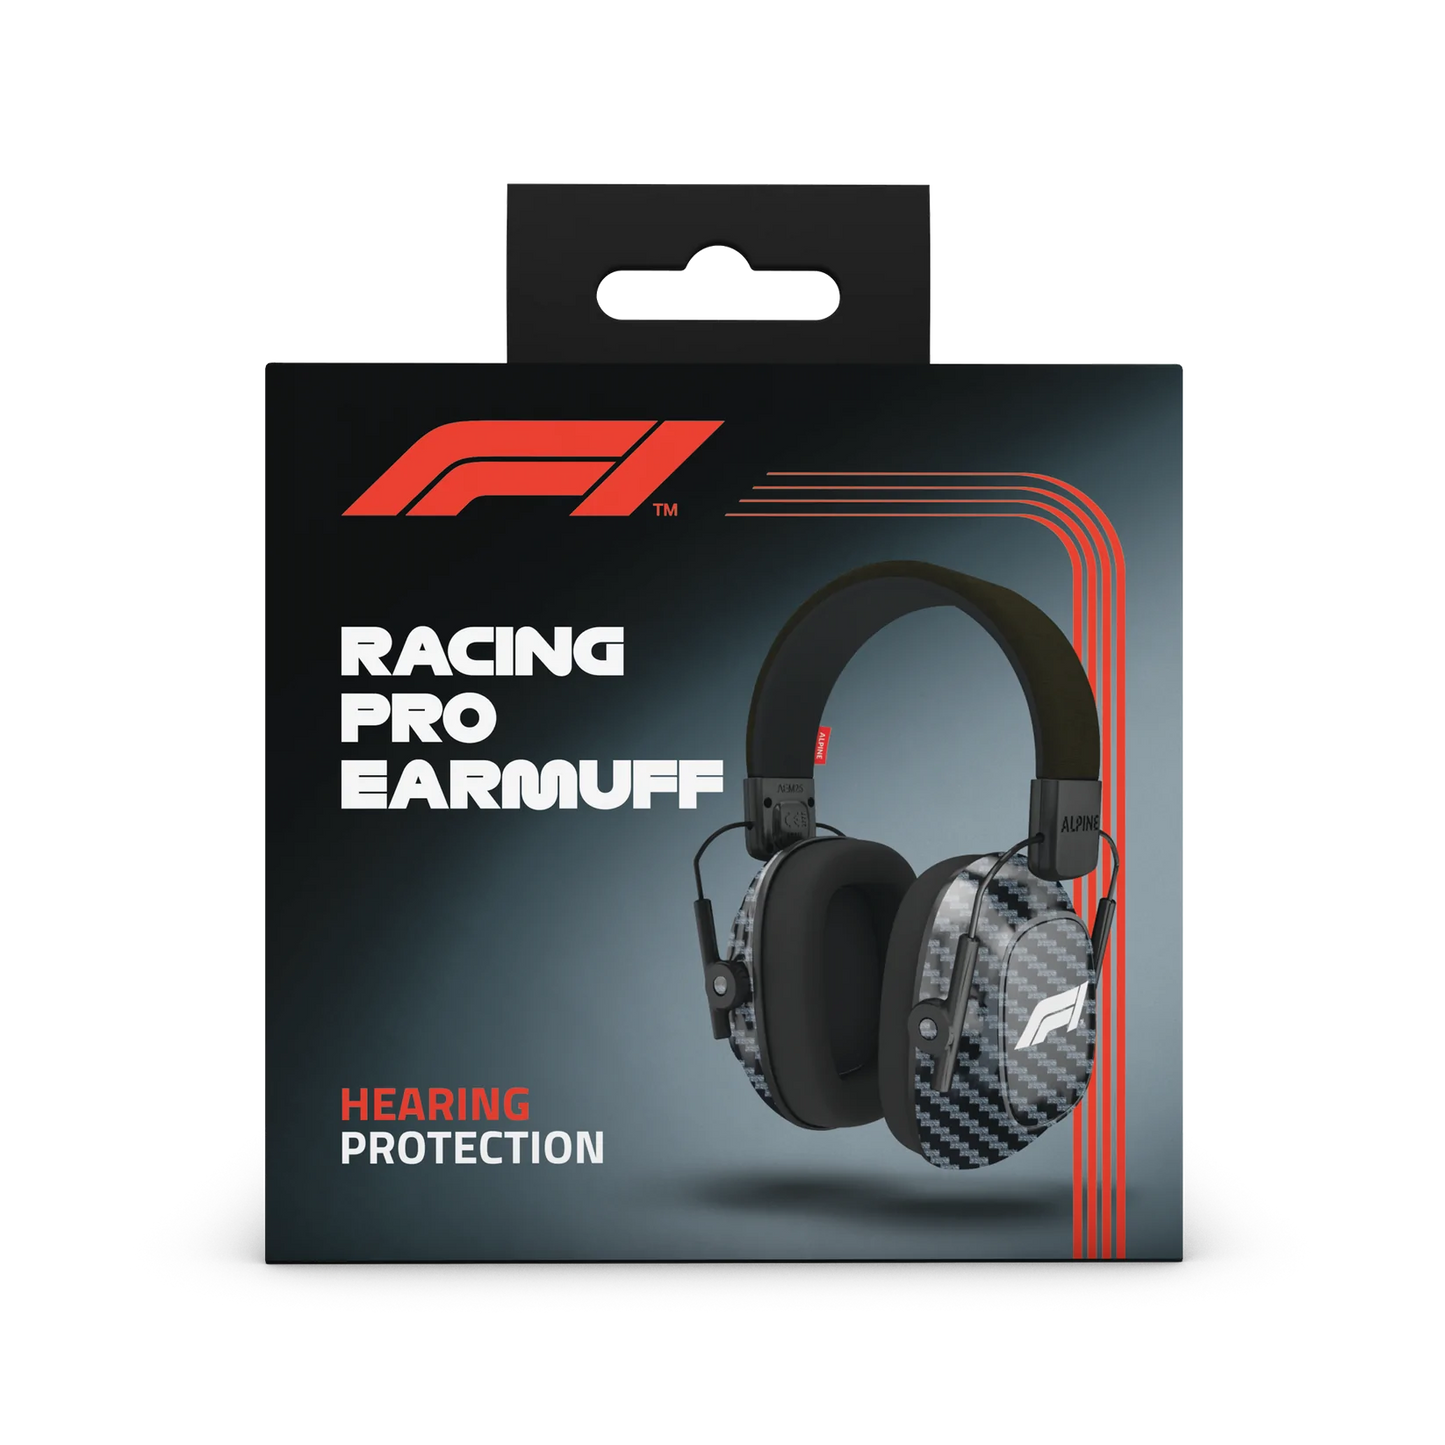 Racing Pro Formula 1® - Alpine F1 Koptelefoon voor uw favoriete races